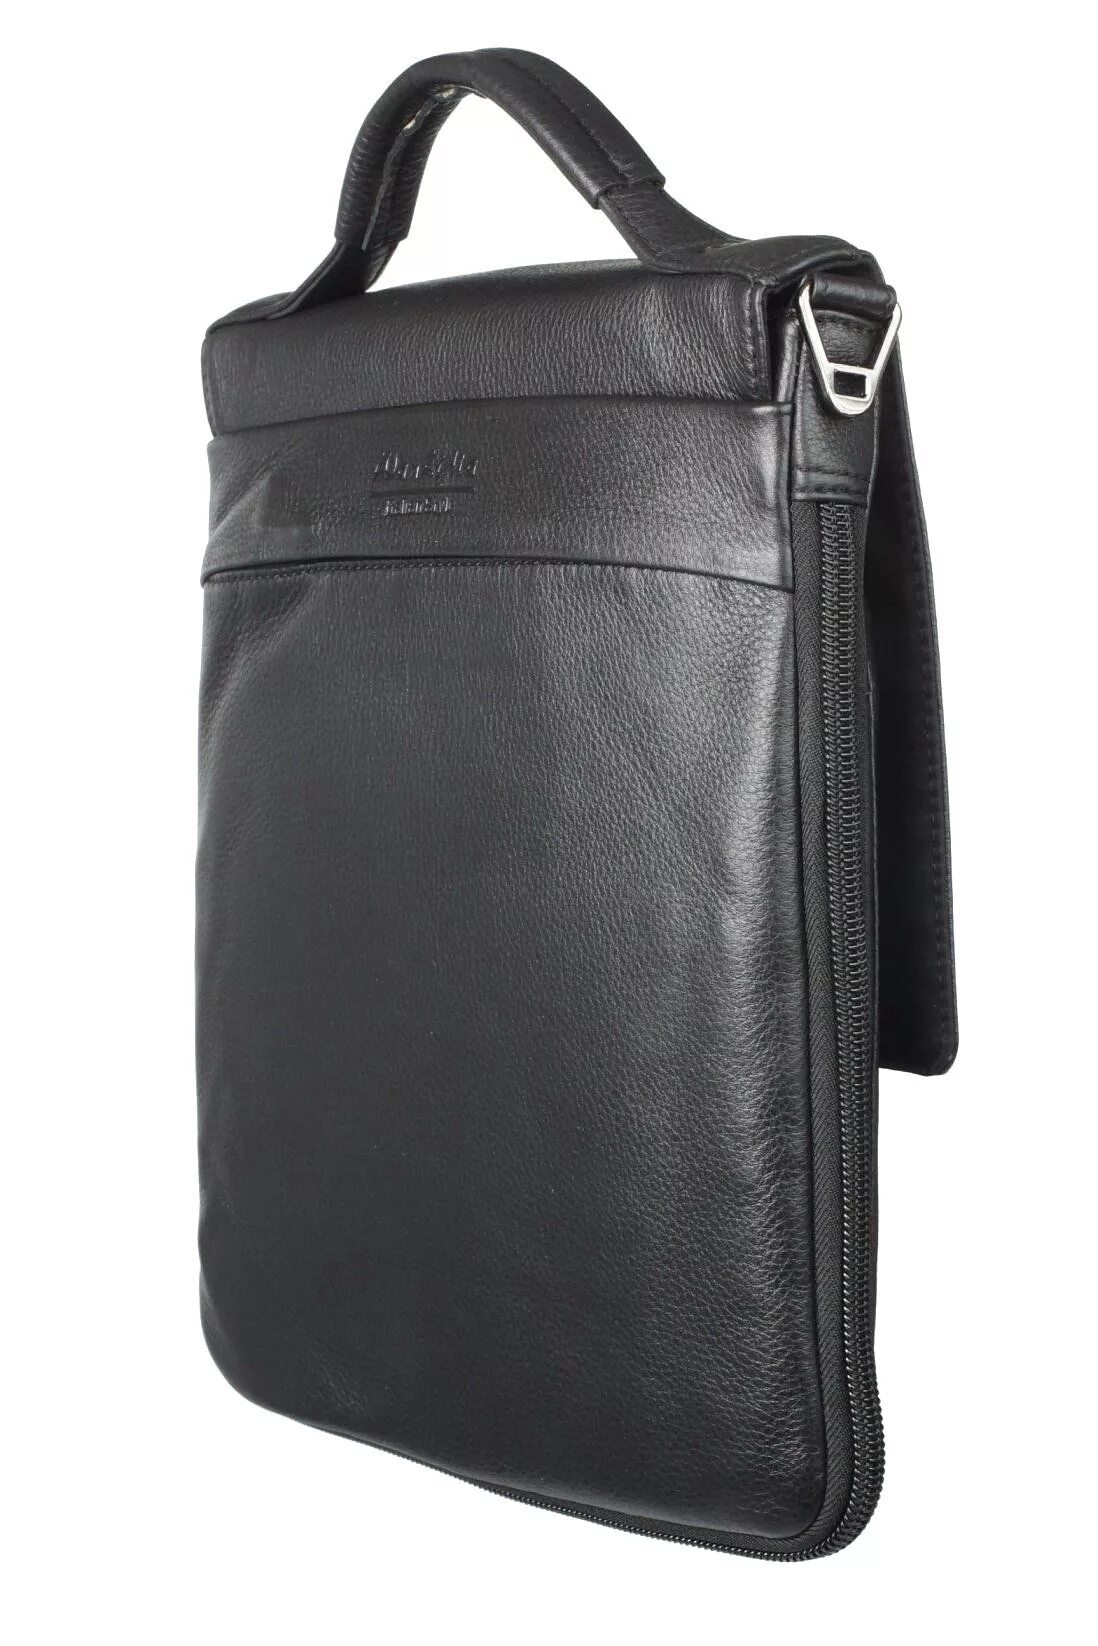 Сумка ВАНЛИМА мужская. Мужская сумка g9153-4 Black. Wanlima VIP мужская сумка. Мужская сумка-планшет «Калабро» m1395 Black. Мужские сумки формата а4